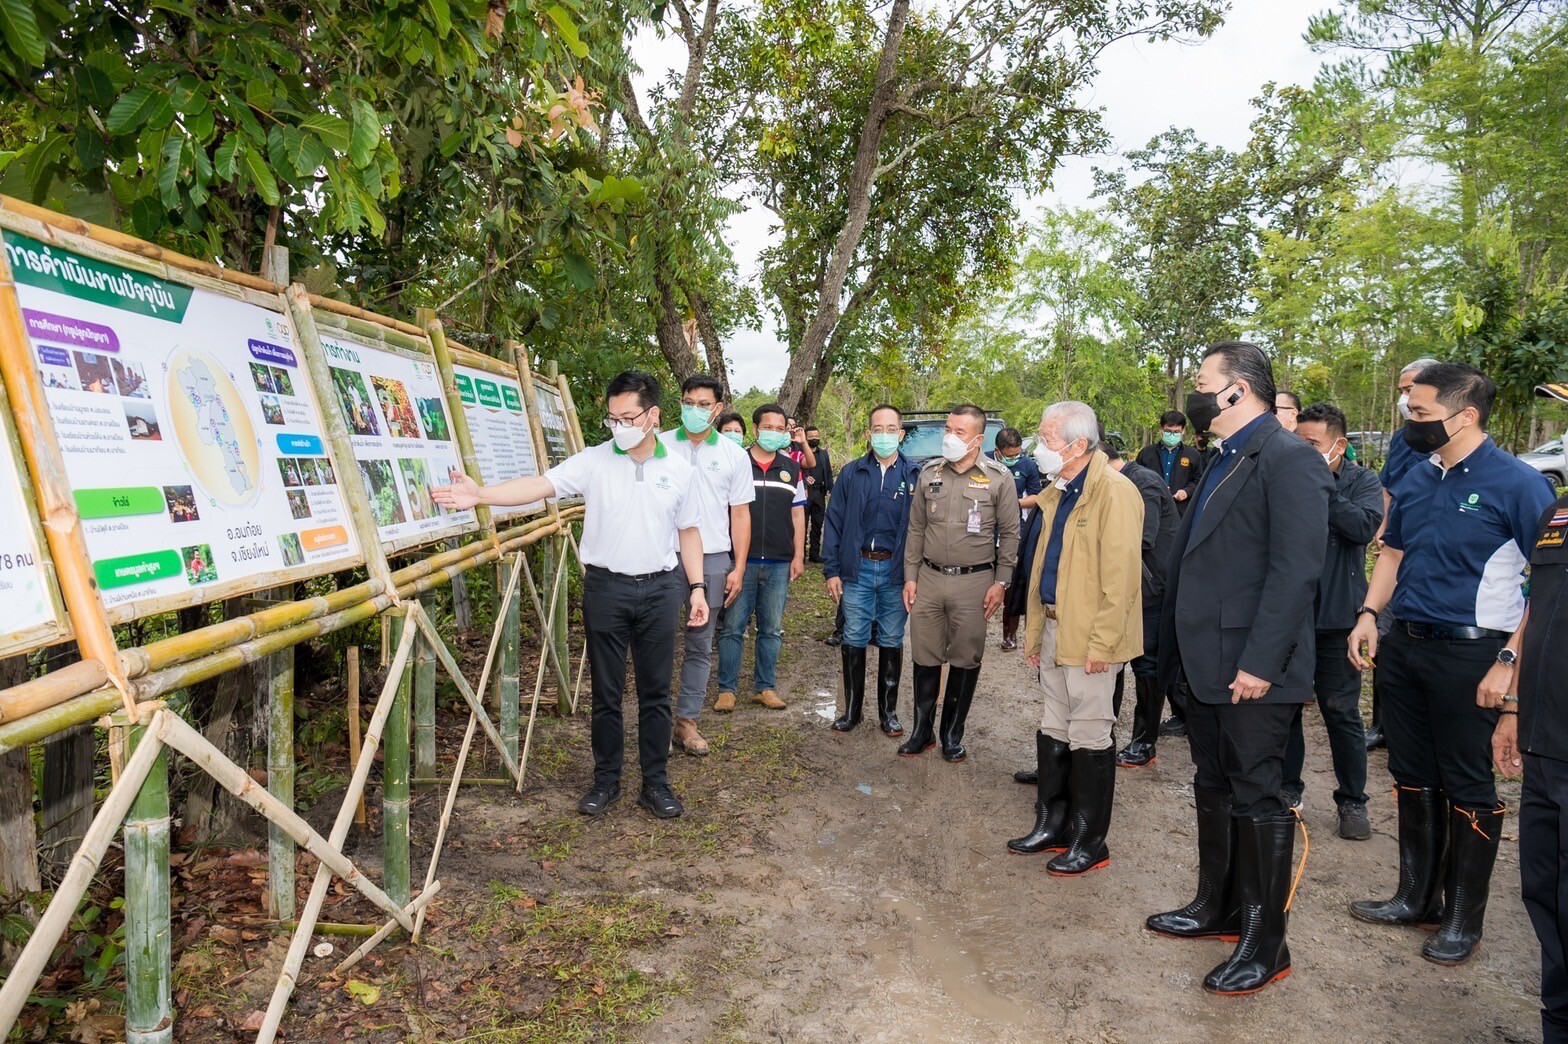 ประธานกรรมการเครือซีพี ลงพื้นที่ติดตามโครงการ "อมก๋อยโมเดล" มูลนิธิเจริญโภคภัณฑ์พัฒนาชีวิตชนบท ฟื้นฟูอนุรักษ์ป่าต้นน้ำ 10,000 ไร่